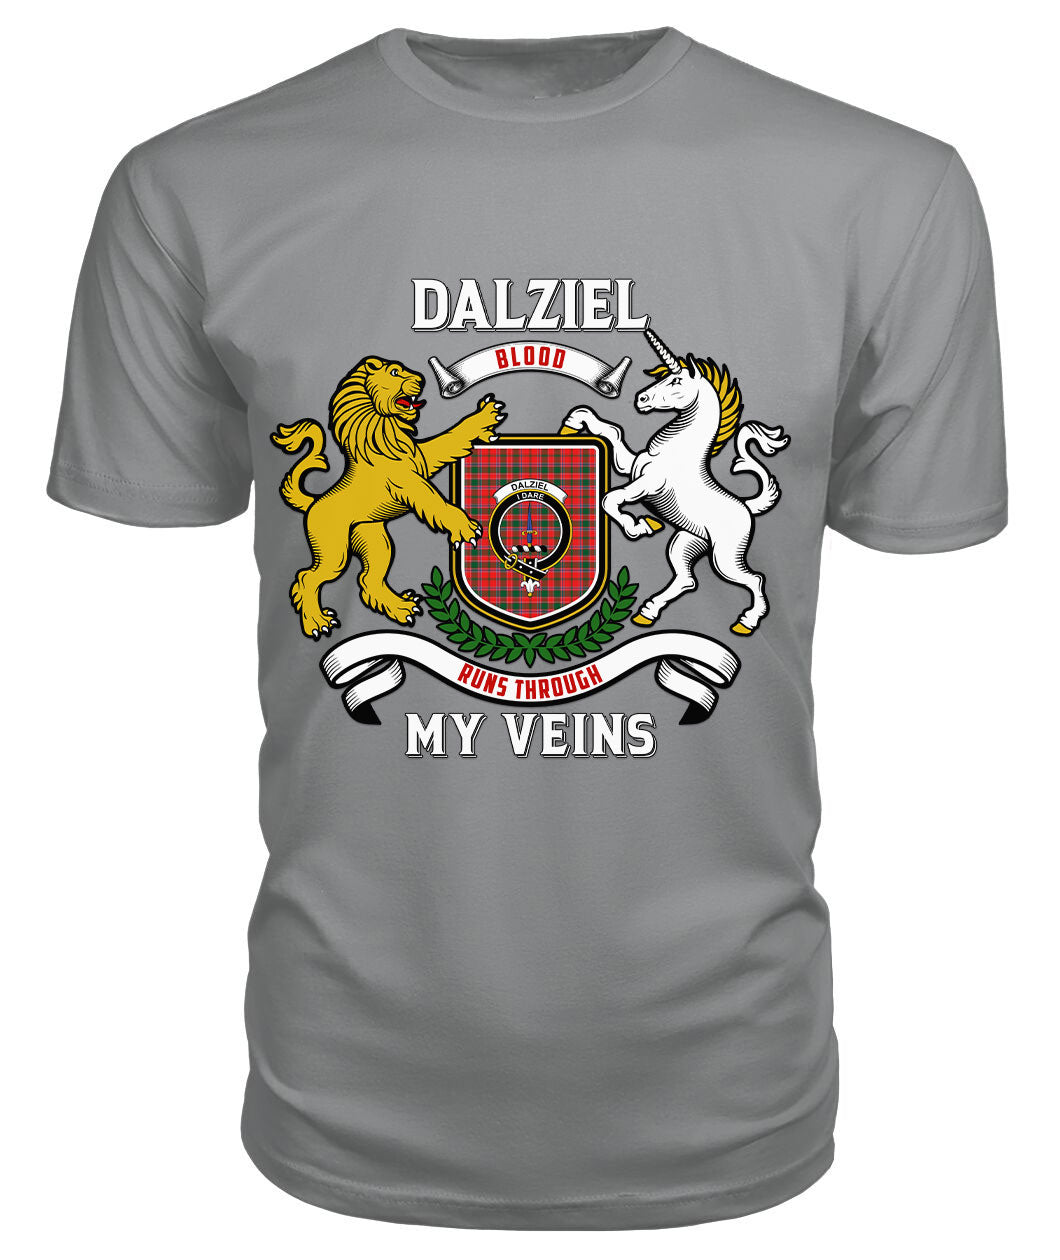 Dalziel Modern Tartan Crest 2D T-shirt - Blood Runs Through My Veins Style